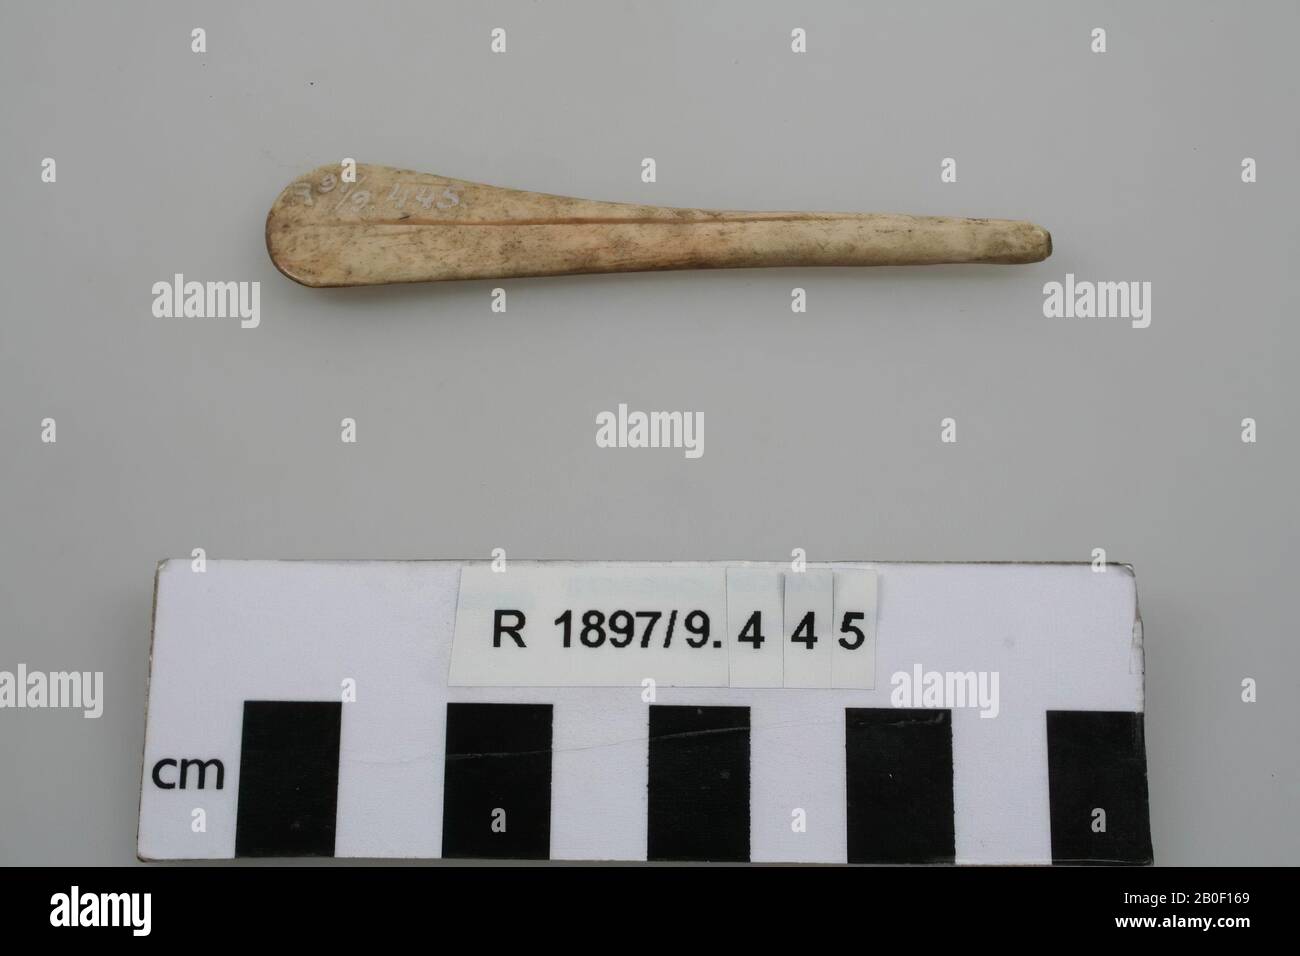 Beine Spachtel, Spachtel, organisch, Knochen, 8,9 x 1,6 x 0,5 cm, Frankreich, unbekannt, unbekannt, unbekannt Stockfoto